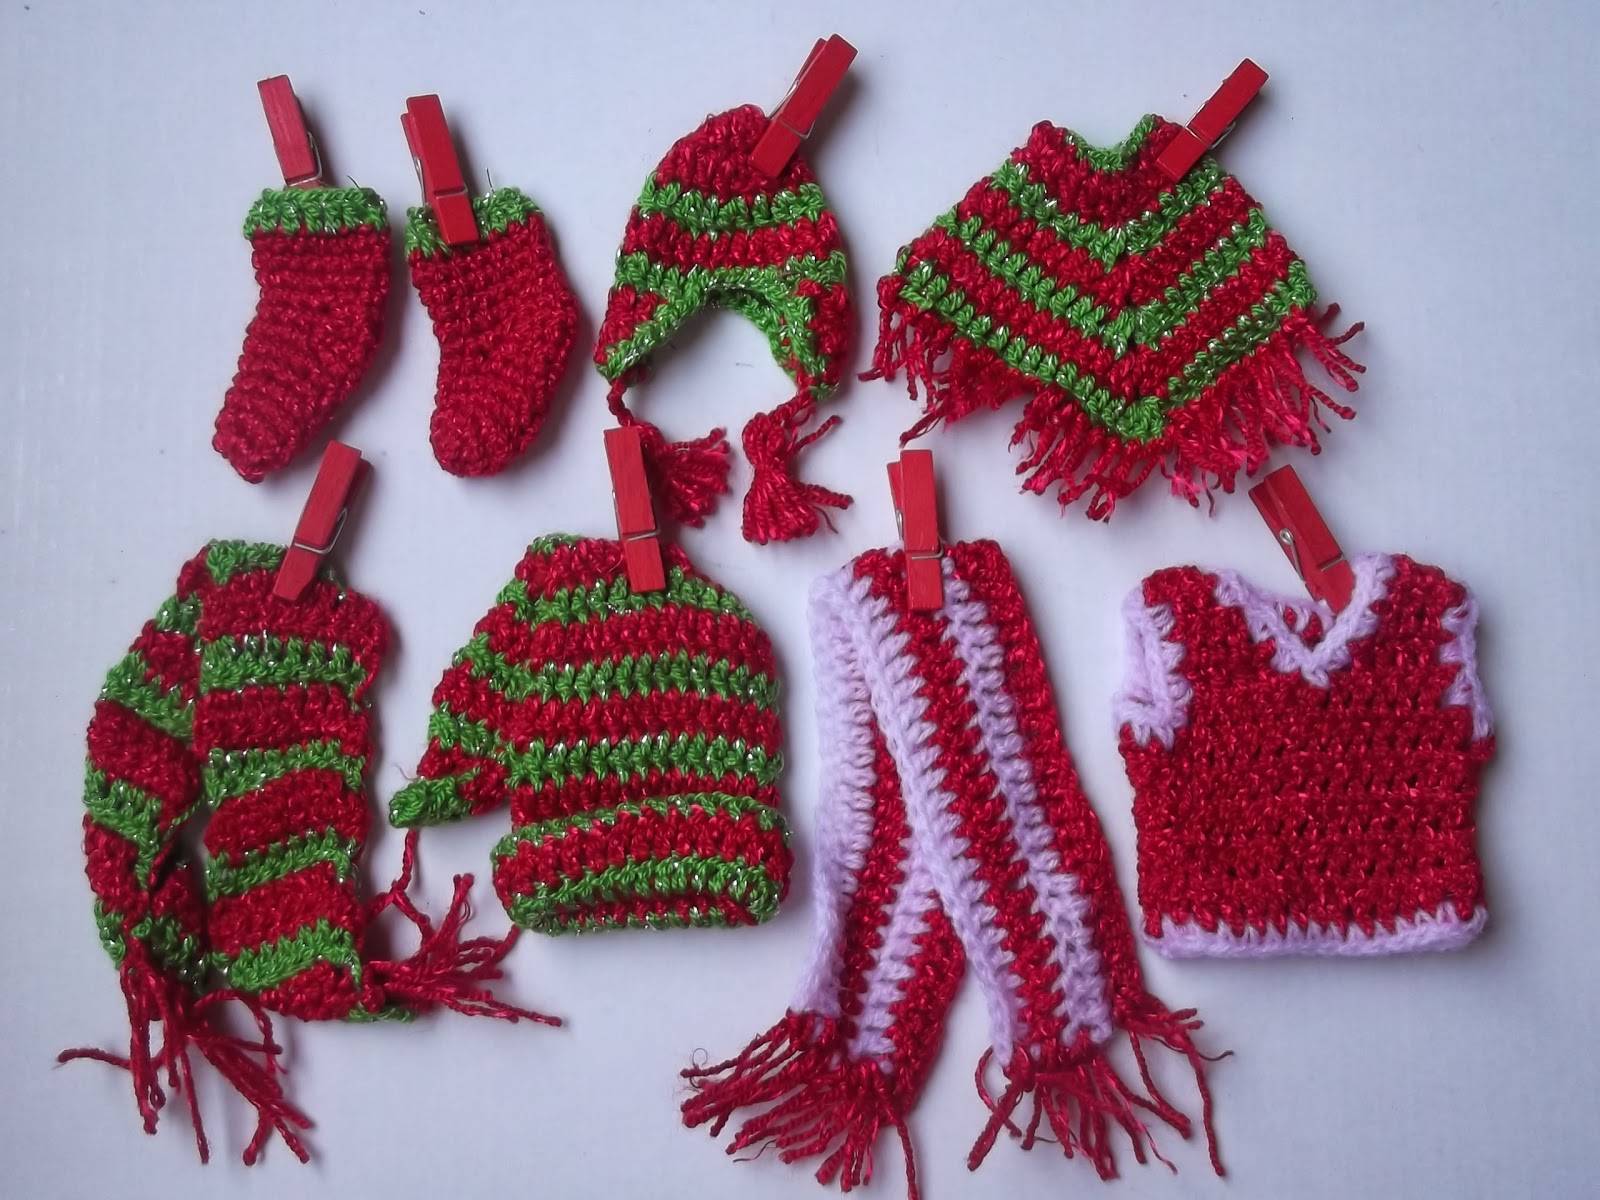 Adornos navideños tejidos a crochet paso a paso 